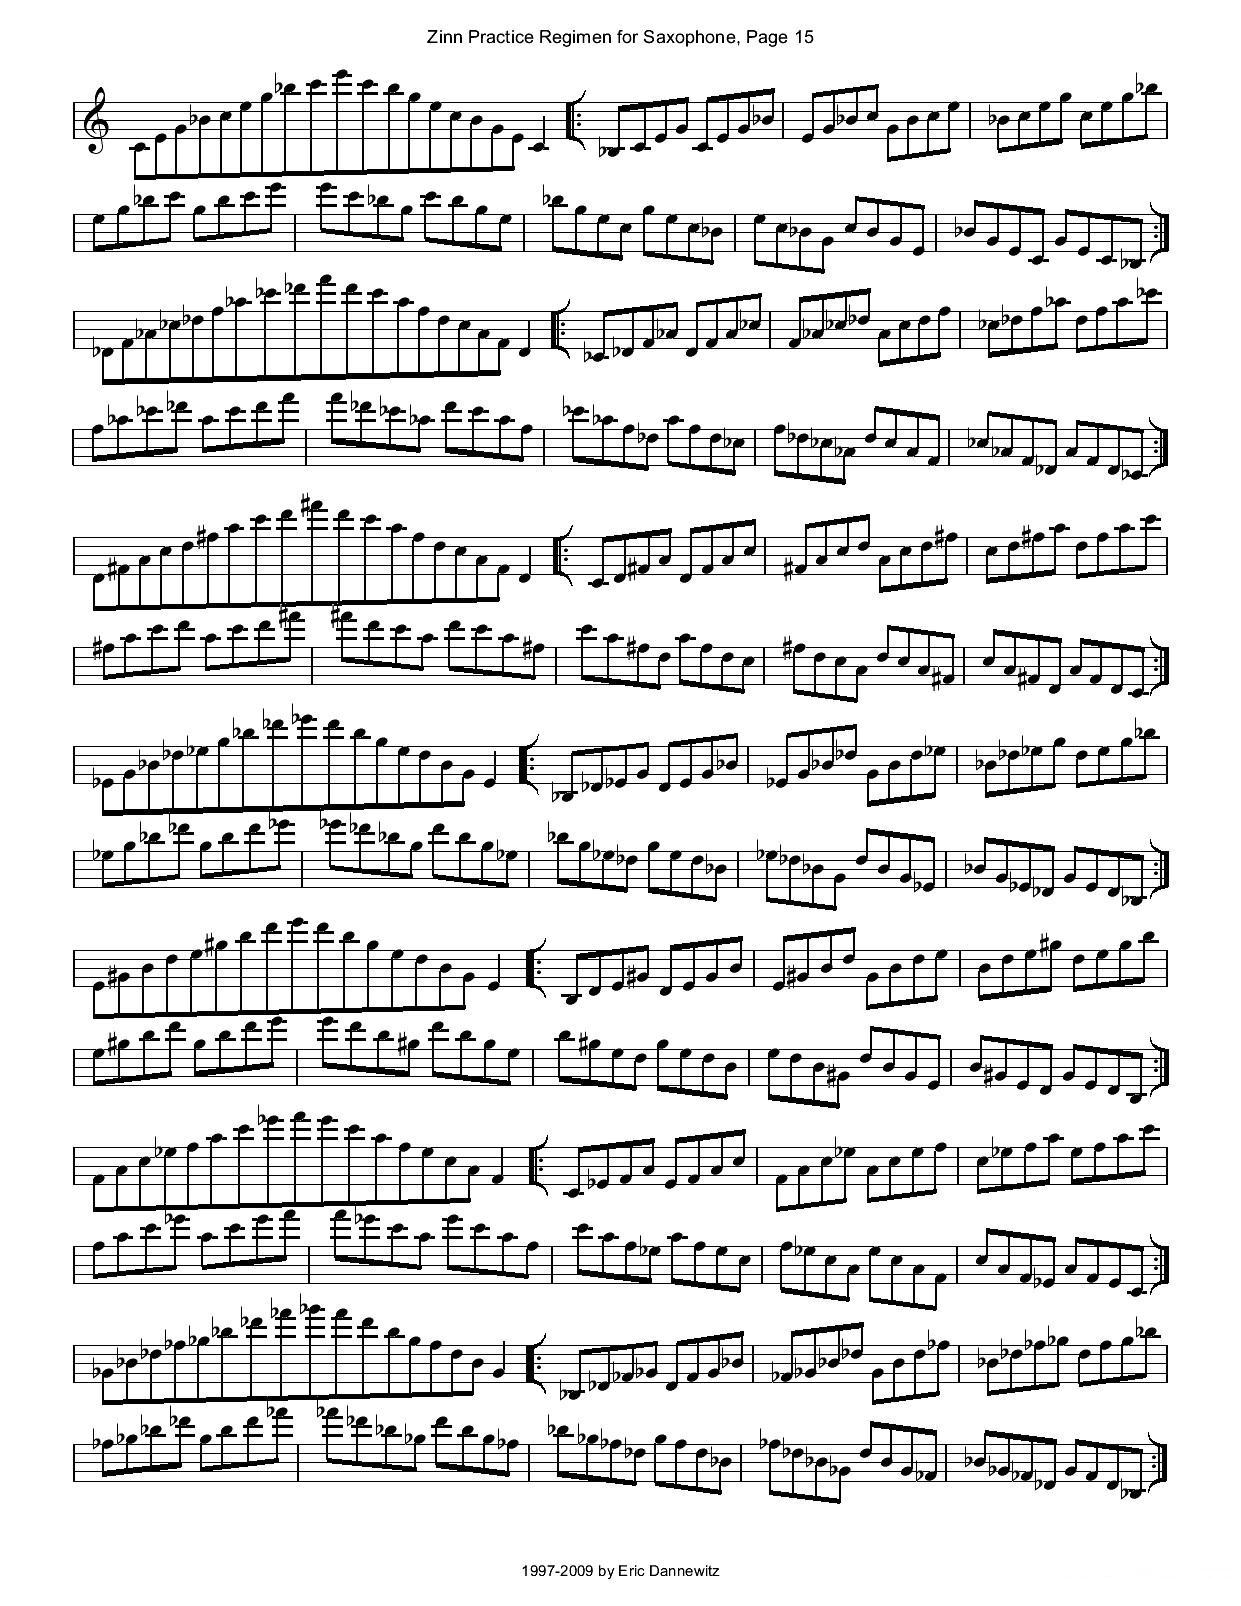 ZinnRegimenSax2009练习曲萨克斯曲谱（图18）